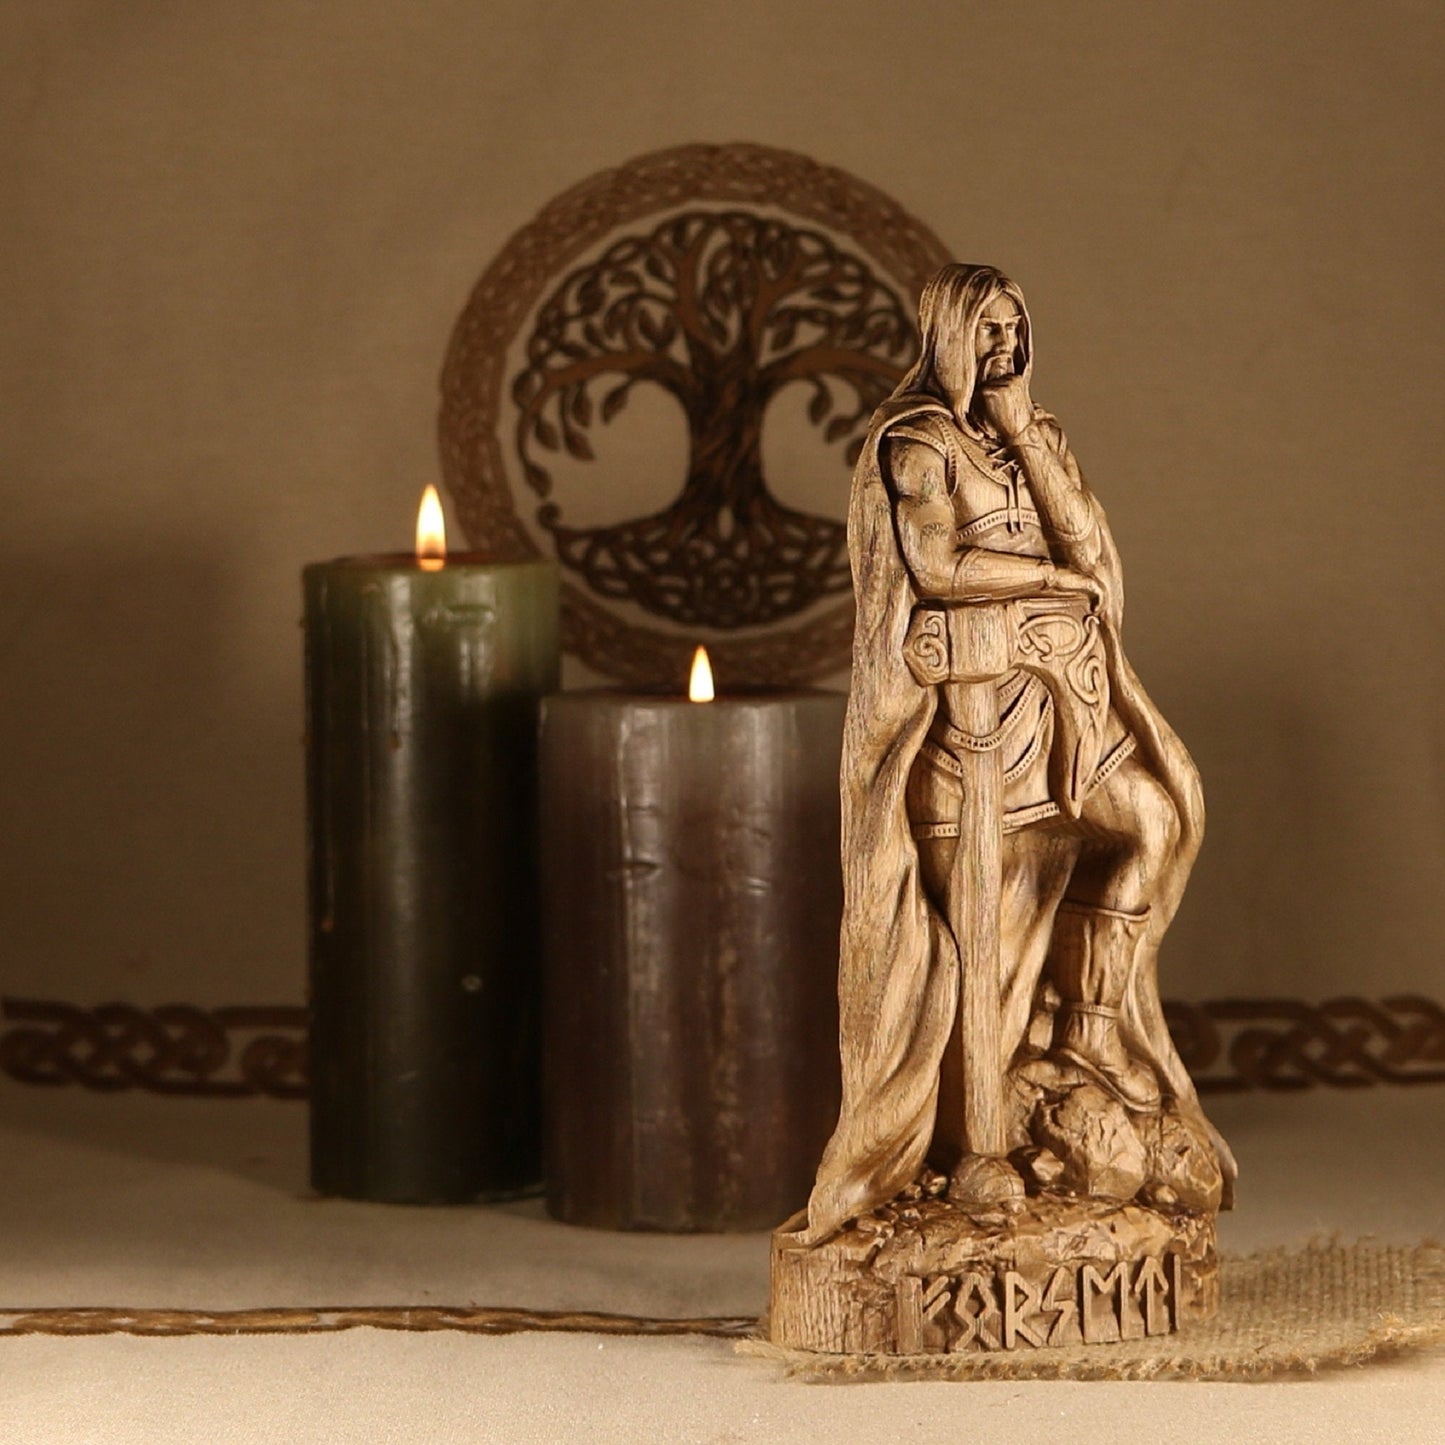 Handmade Forseti Statue - Carved Wood Figurines